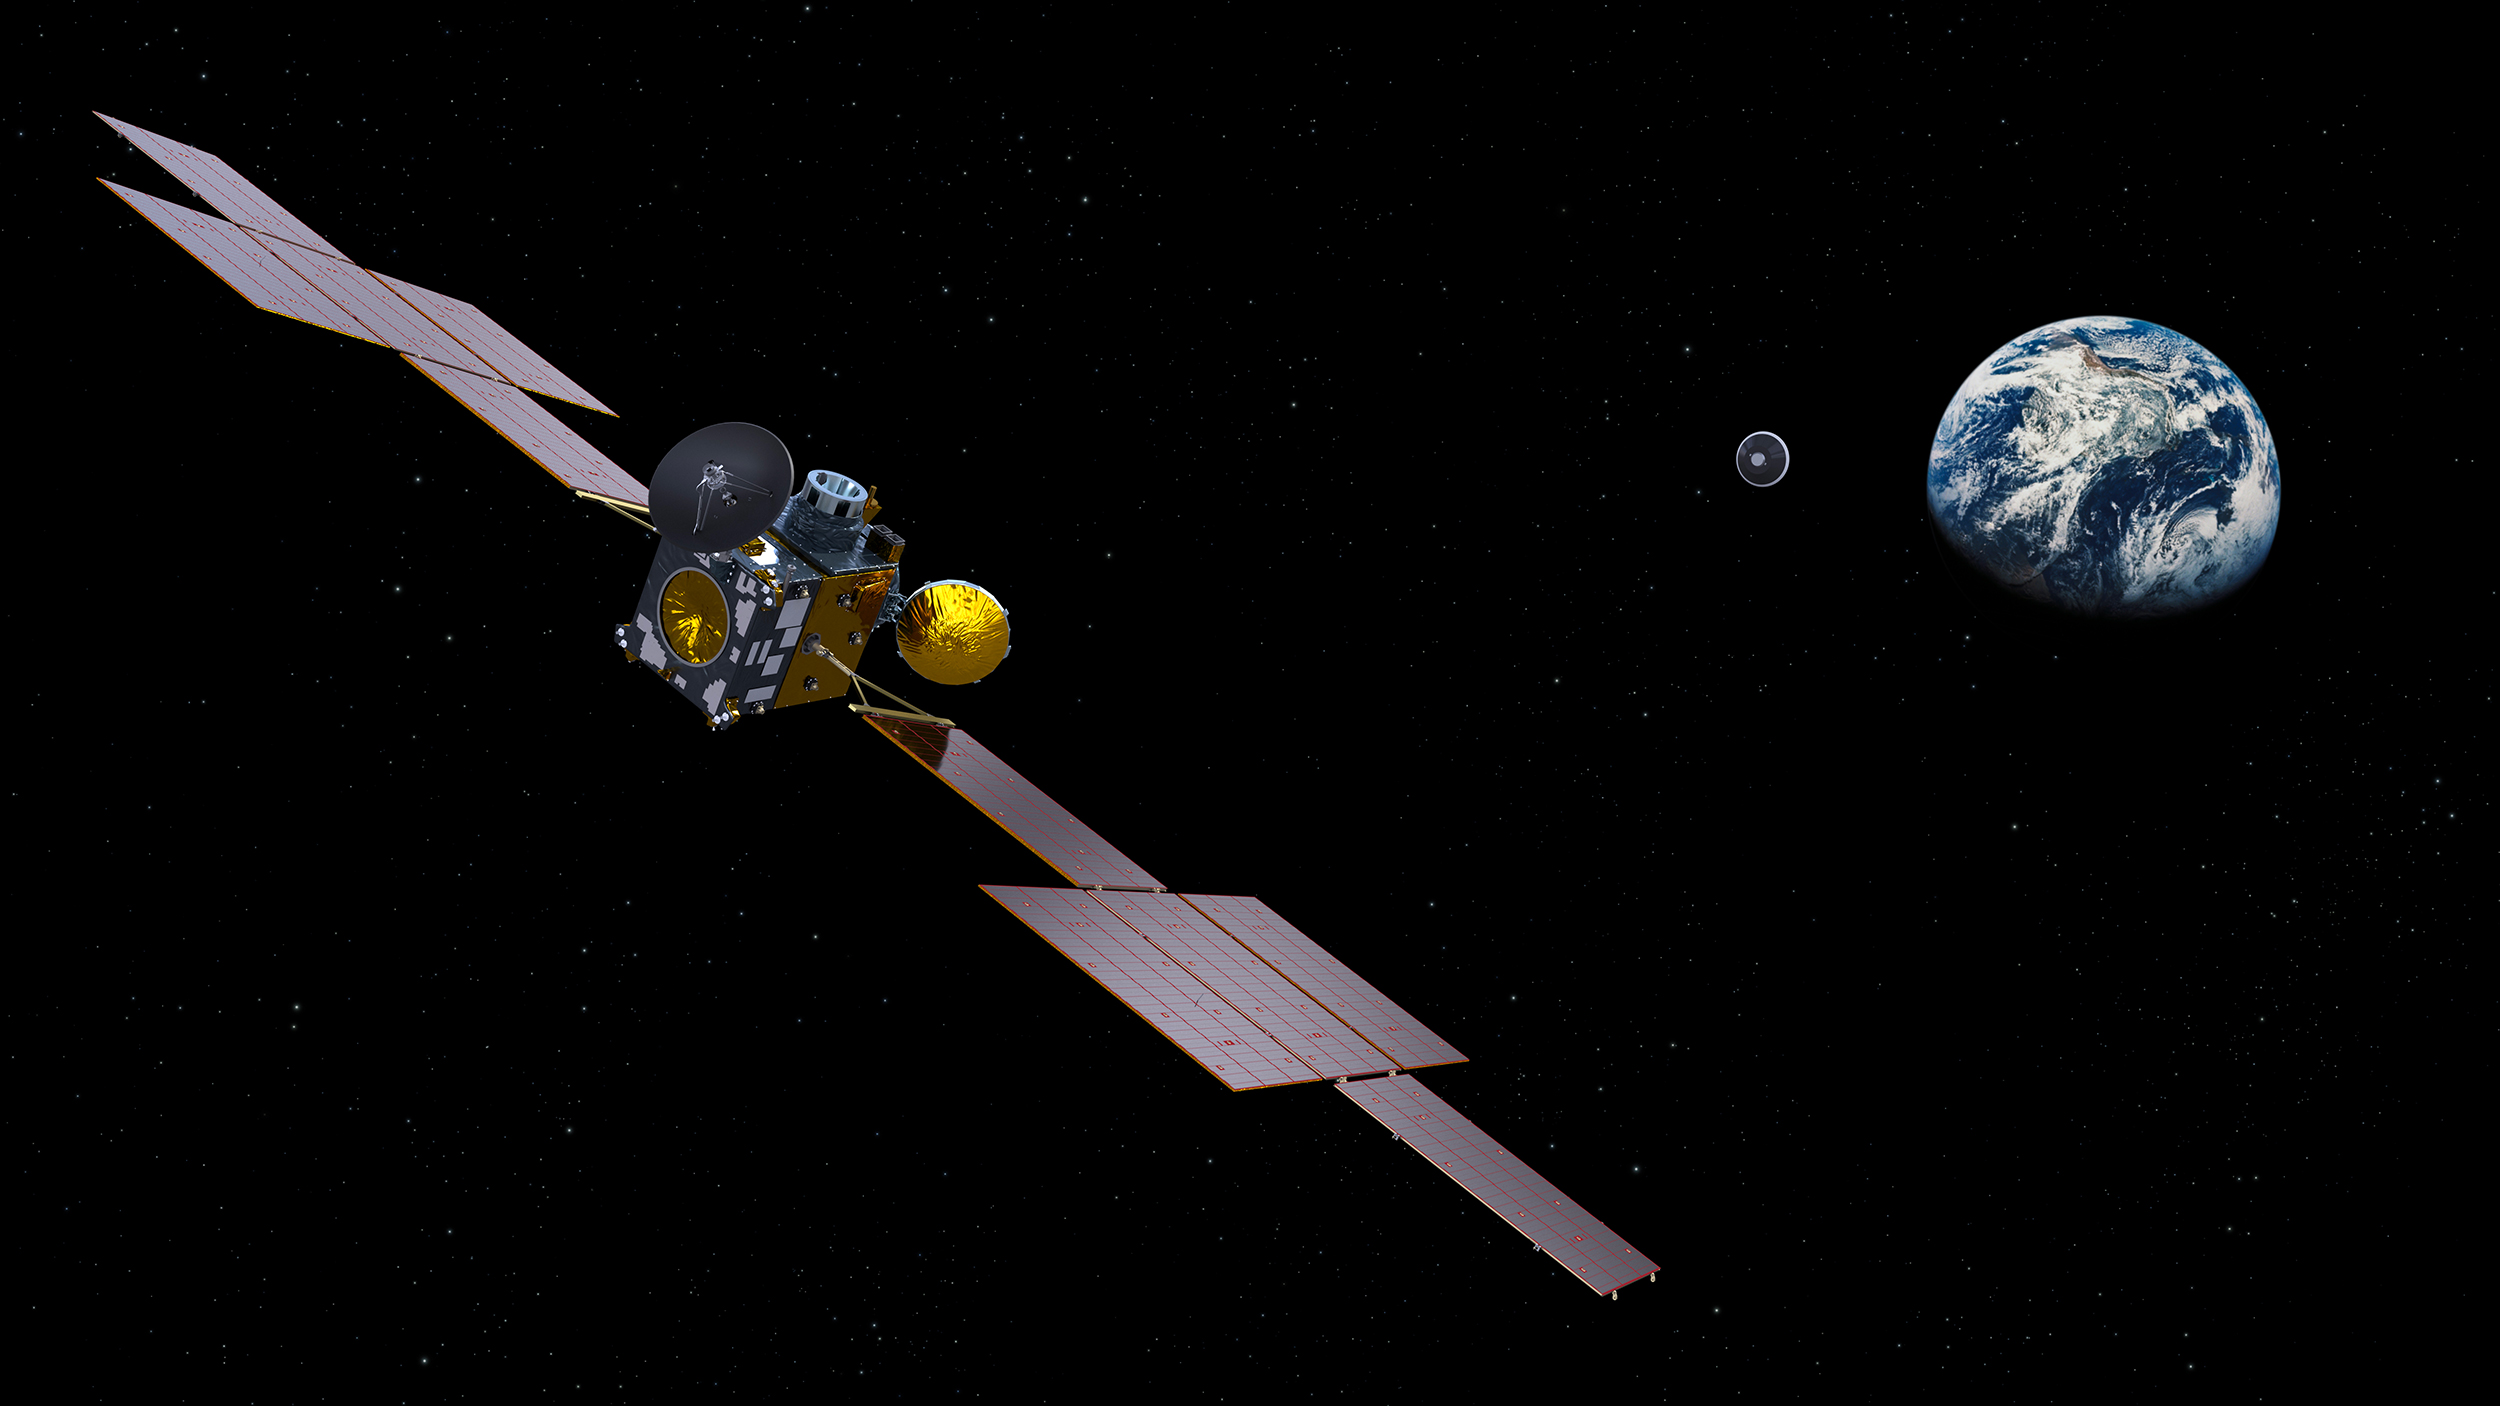 ERO (Earth Return Orbiter), le satellite de capture et de retour, de retour de Mars, larguant la capsule abritant les échantillons martiens. Notez&nbsp;l'absence du module d'insertion en orbite (IOM), laissé en orbite martienne. ERO&nbsp;sera réalisé par Airbus et le module OIM par Thales Alenia Space sous la maîtrise d'œuvre d'Airbus. © ESA, ATG-Medialab